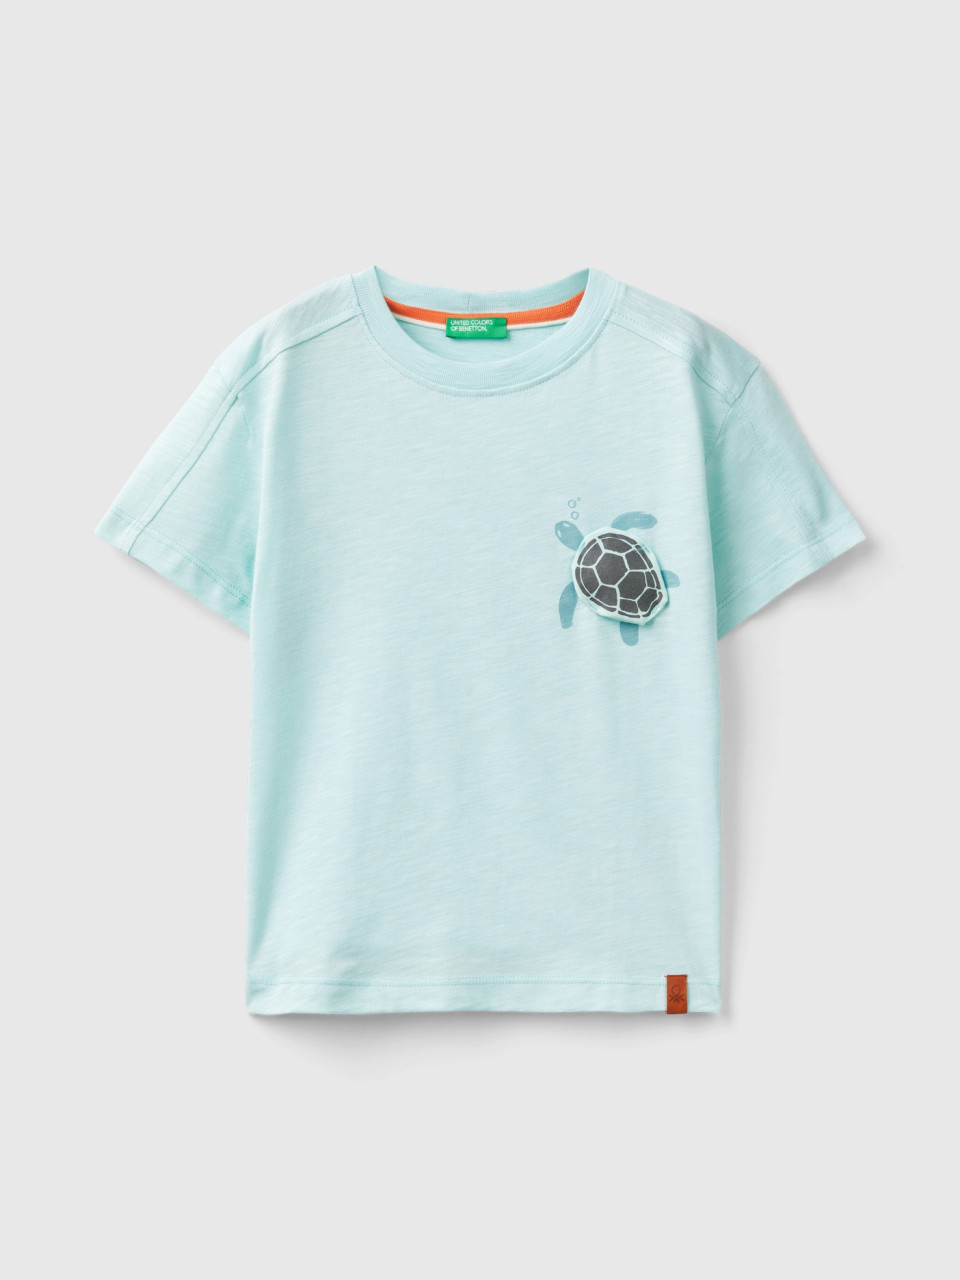 Benetton, Camiseta Con Estampado Y Aplicación, Verde Agua, Niños